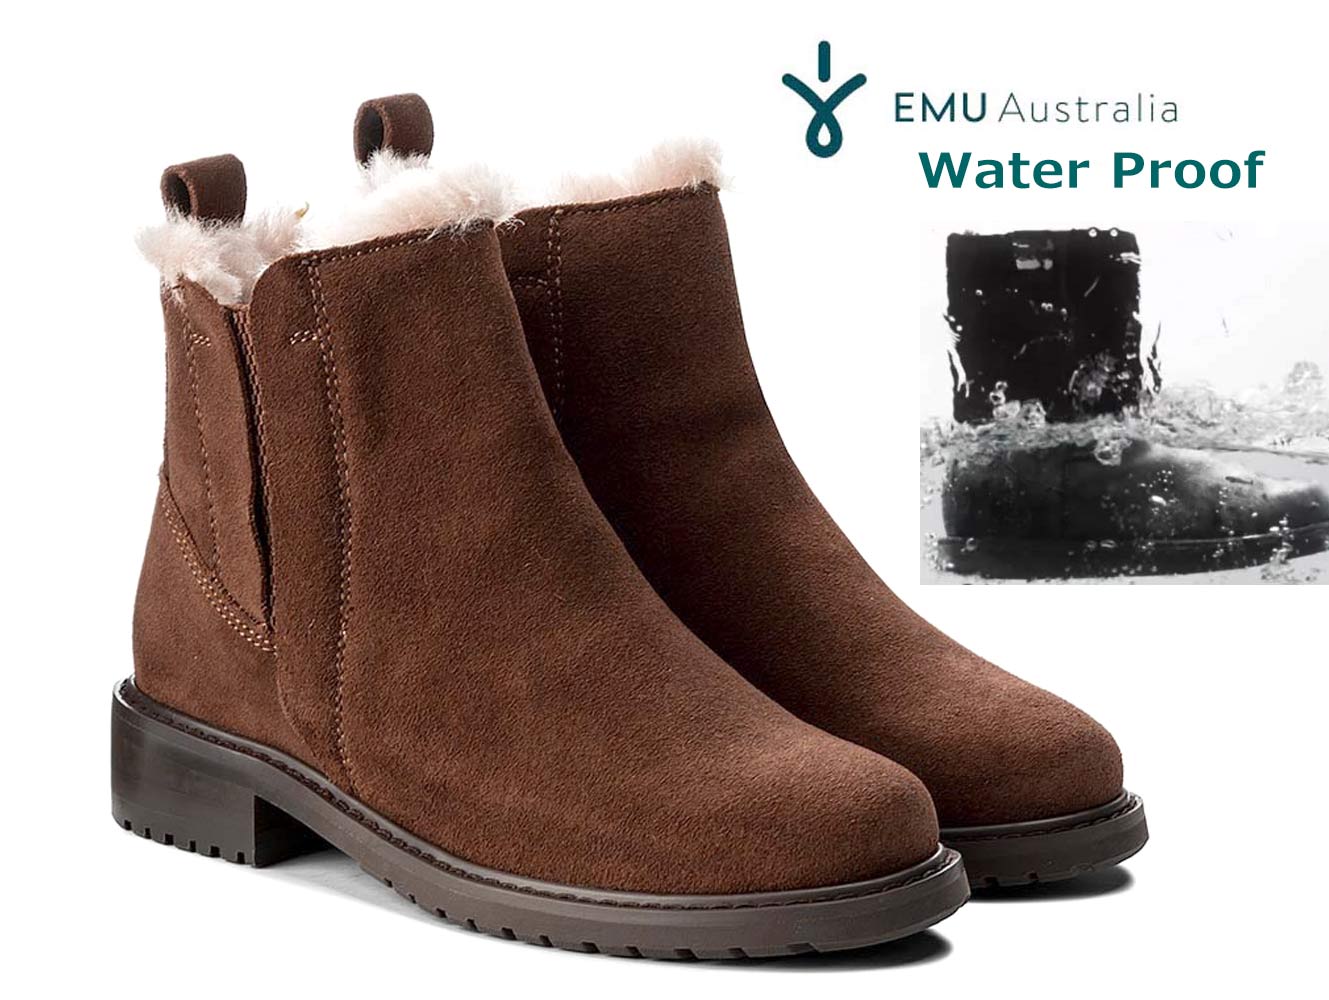 エミュ オーストラリア スノーブーツ レディース EMU（エミュー）防水ムートンブーツ/エミュ パイオニア/Pioneer 防水ブーツ レインブーツ W11292 emu AUSTRALIA エミュ オーストラリア【あす楽対応_関東】